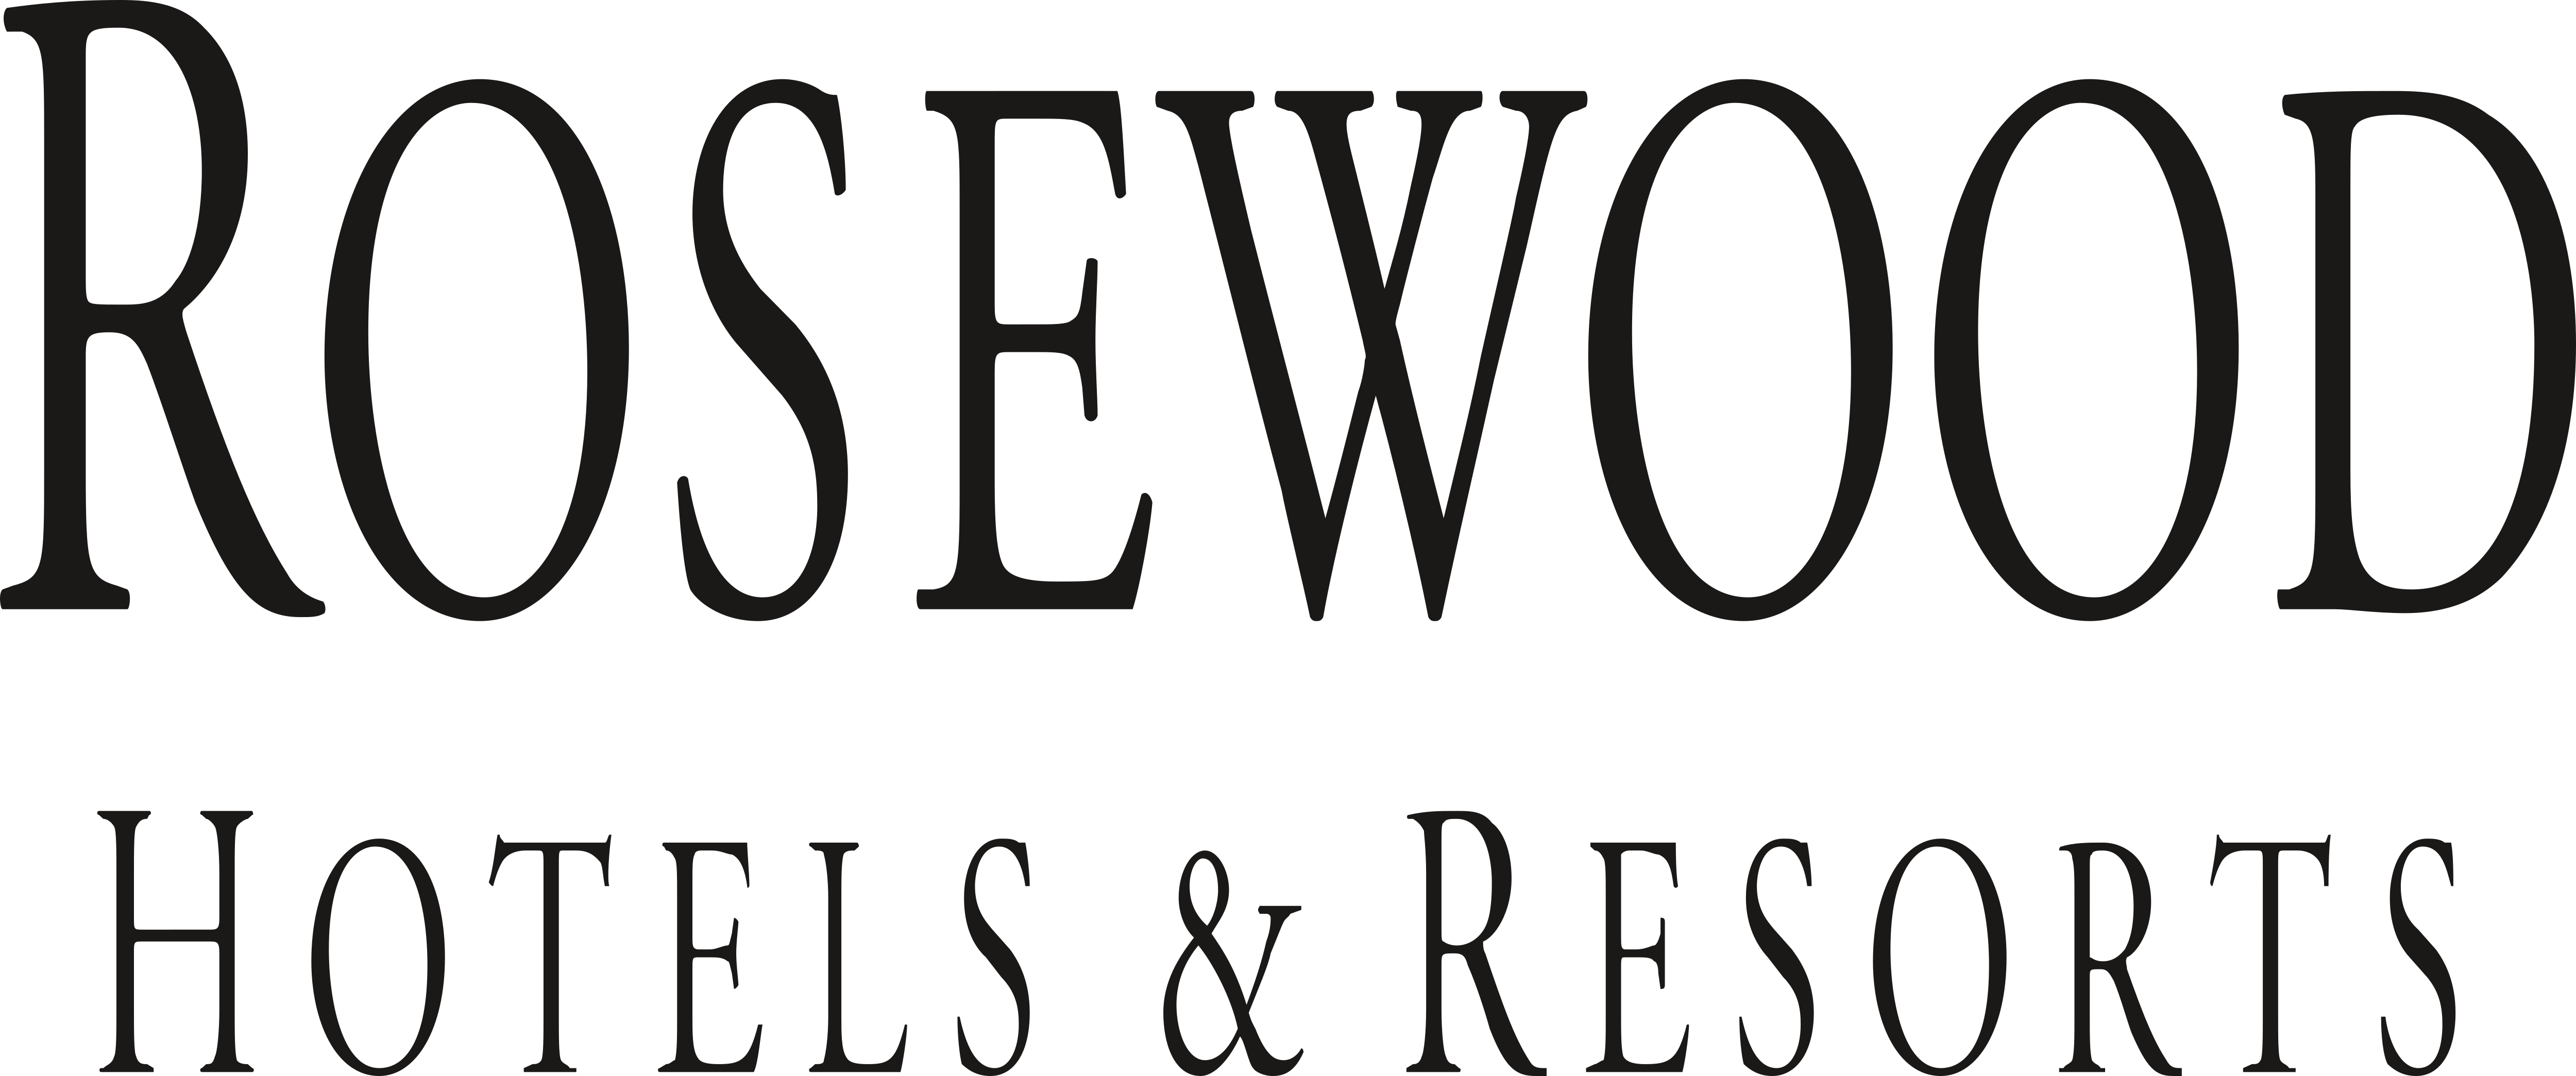 foxwoods casino logo transparent